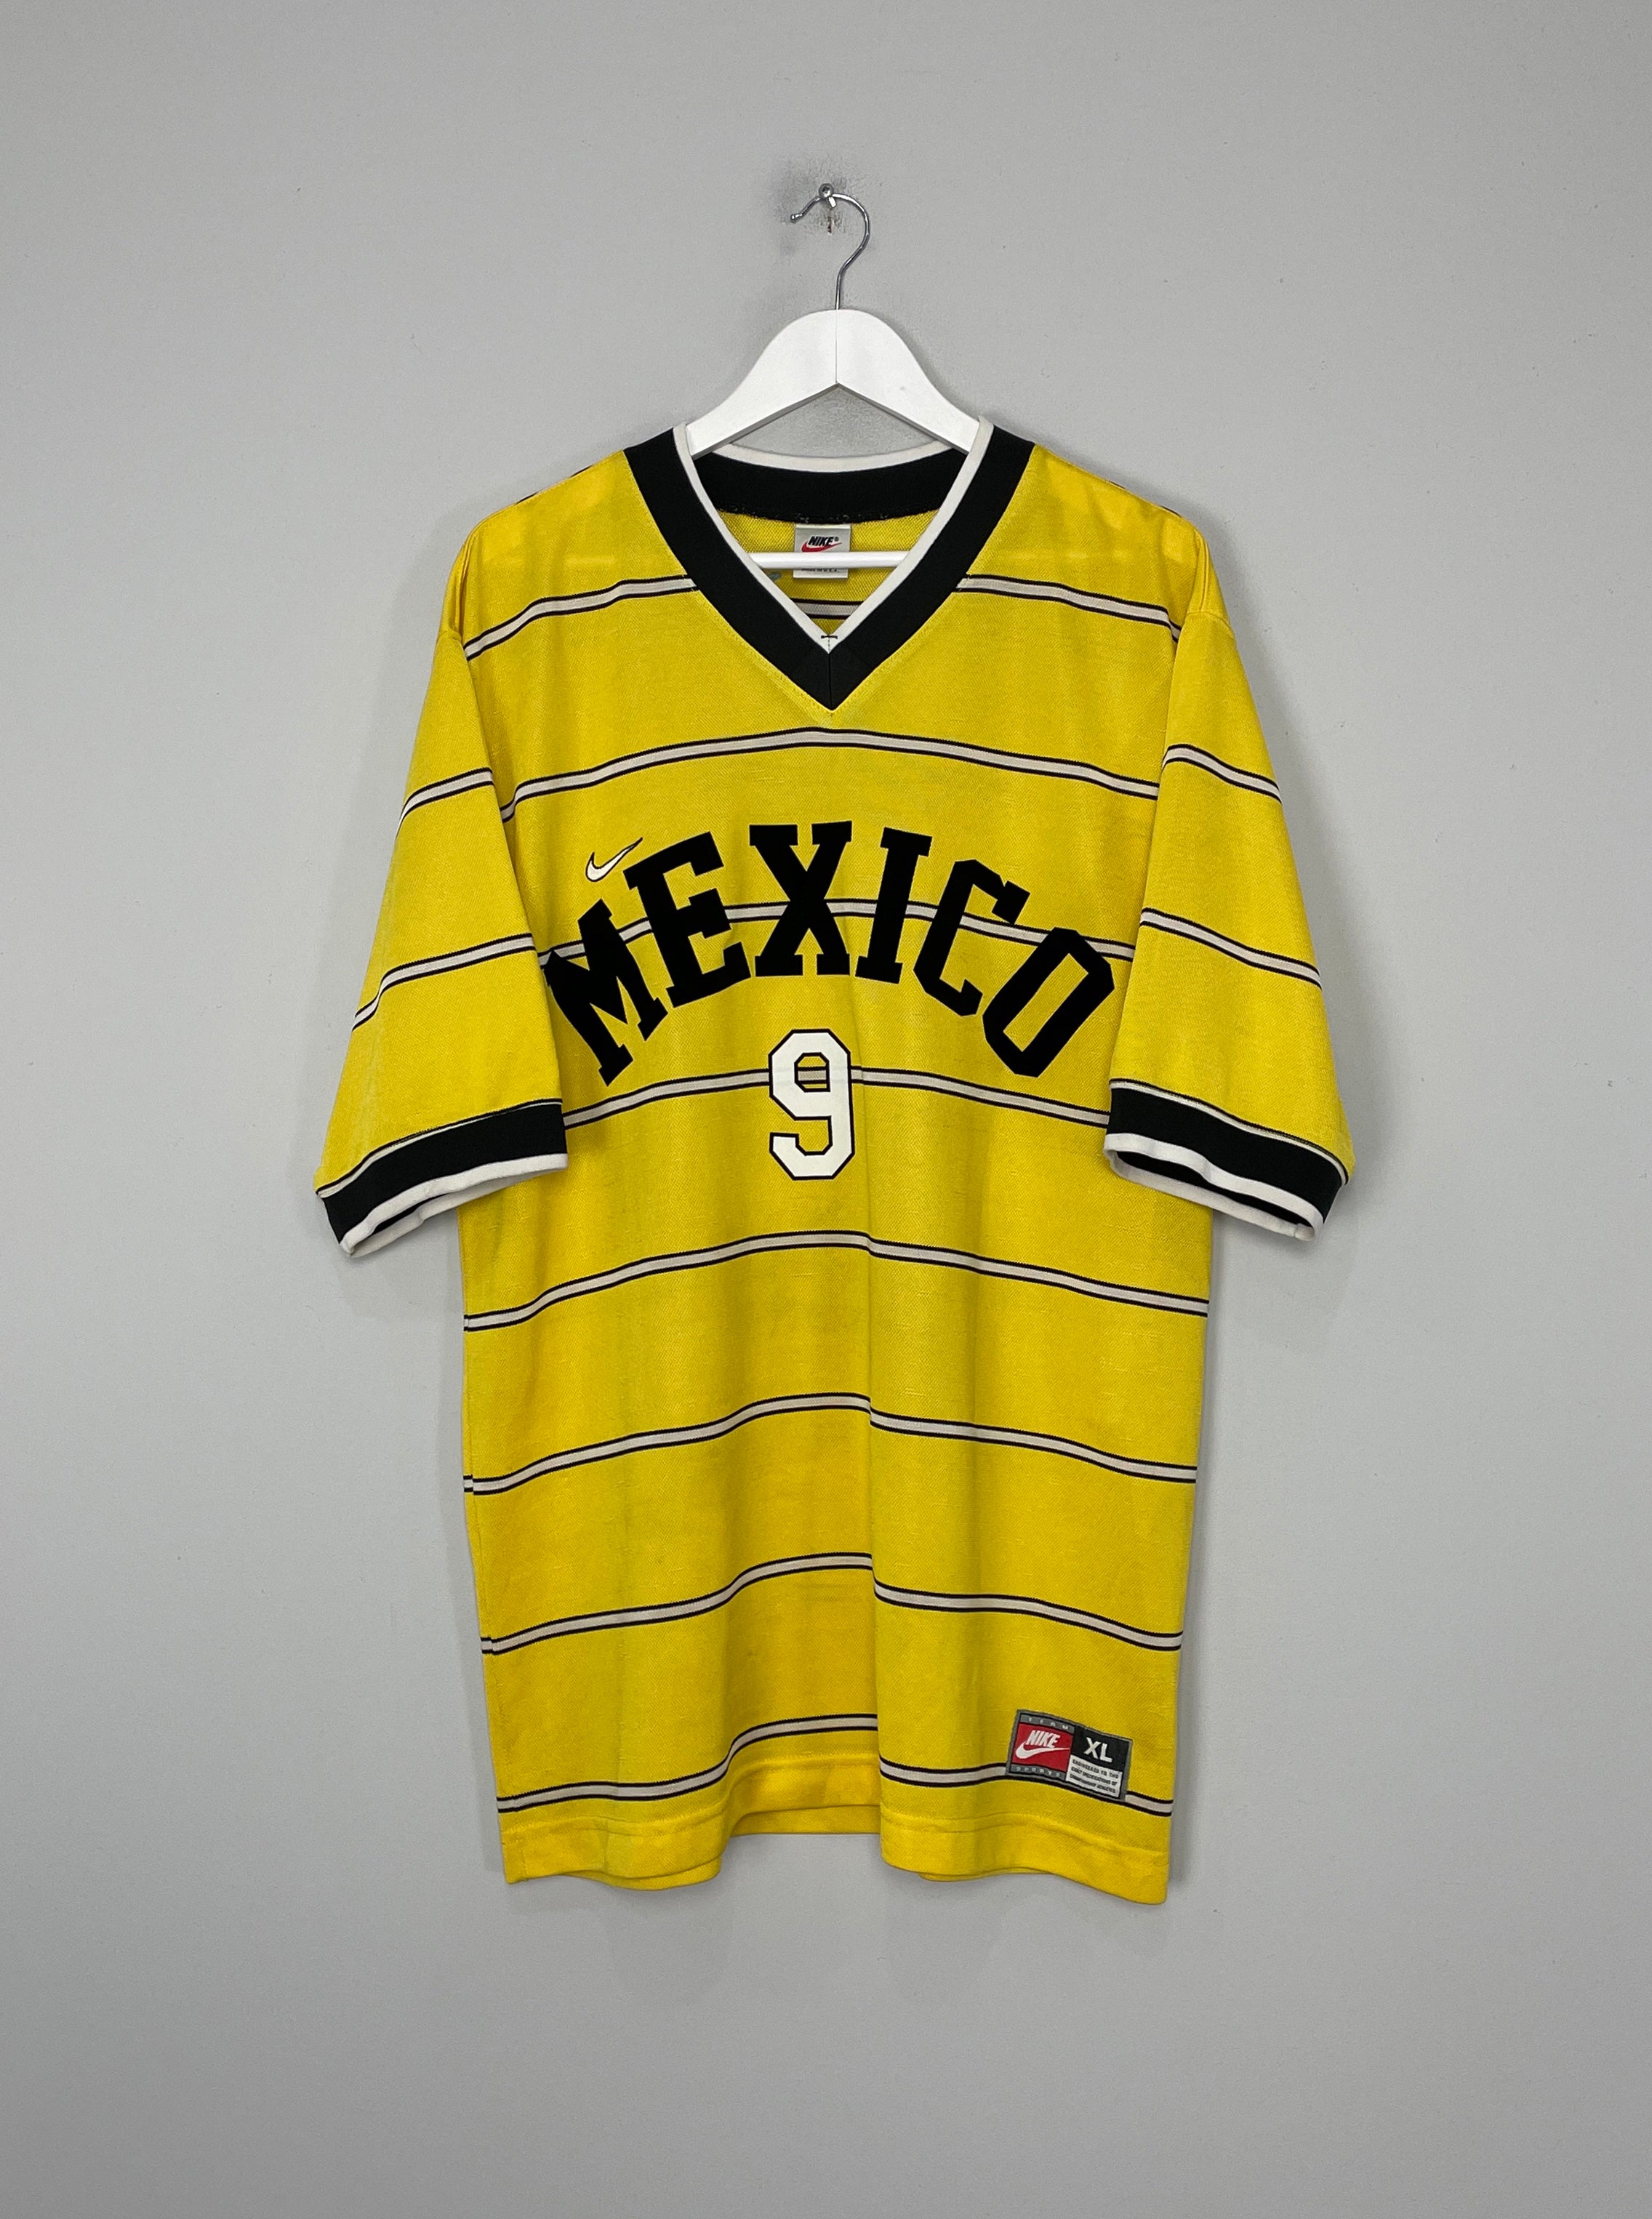 1999/00 MEXICO CAMPOS #9 GK SHIRT (XL) NIKE